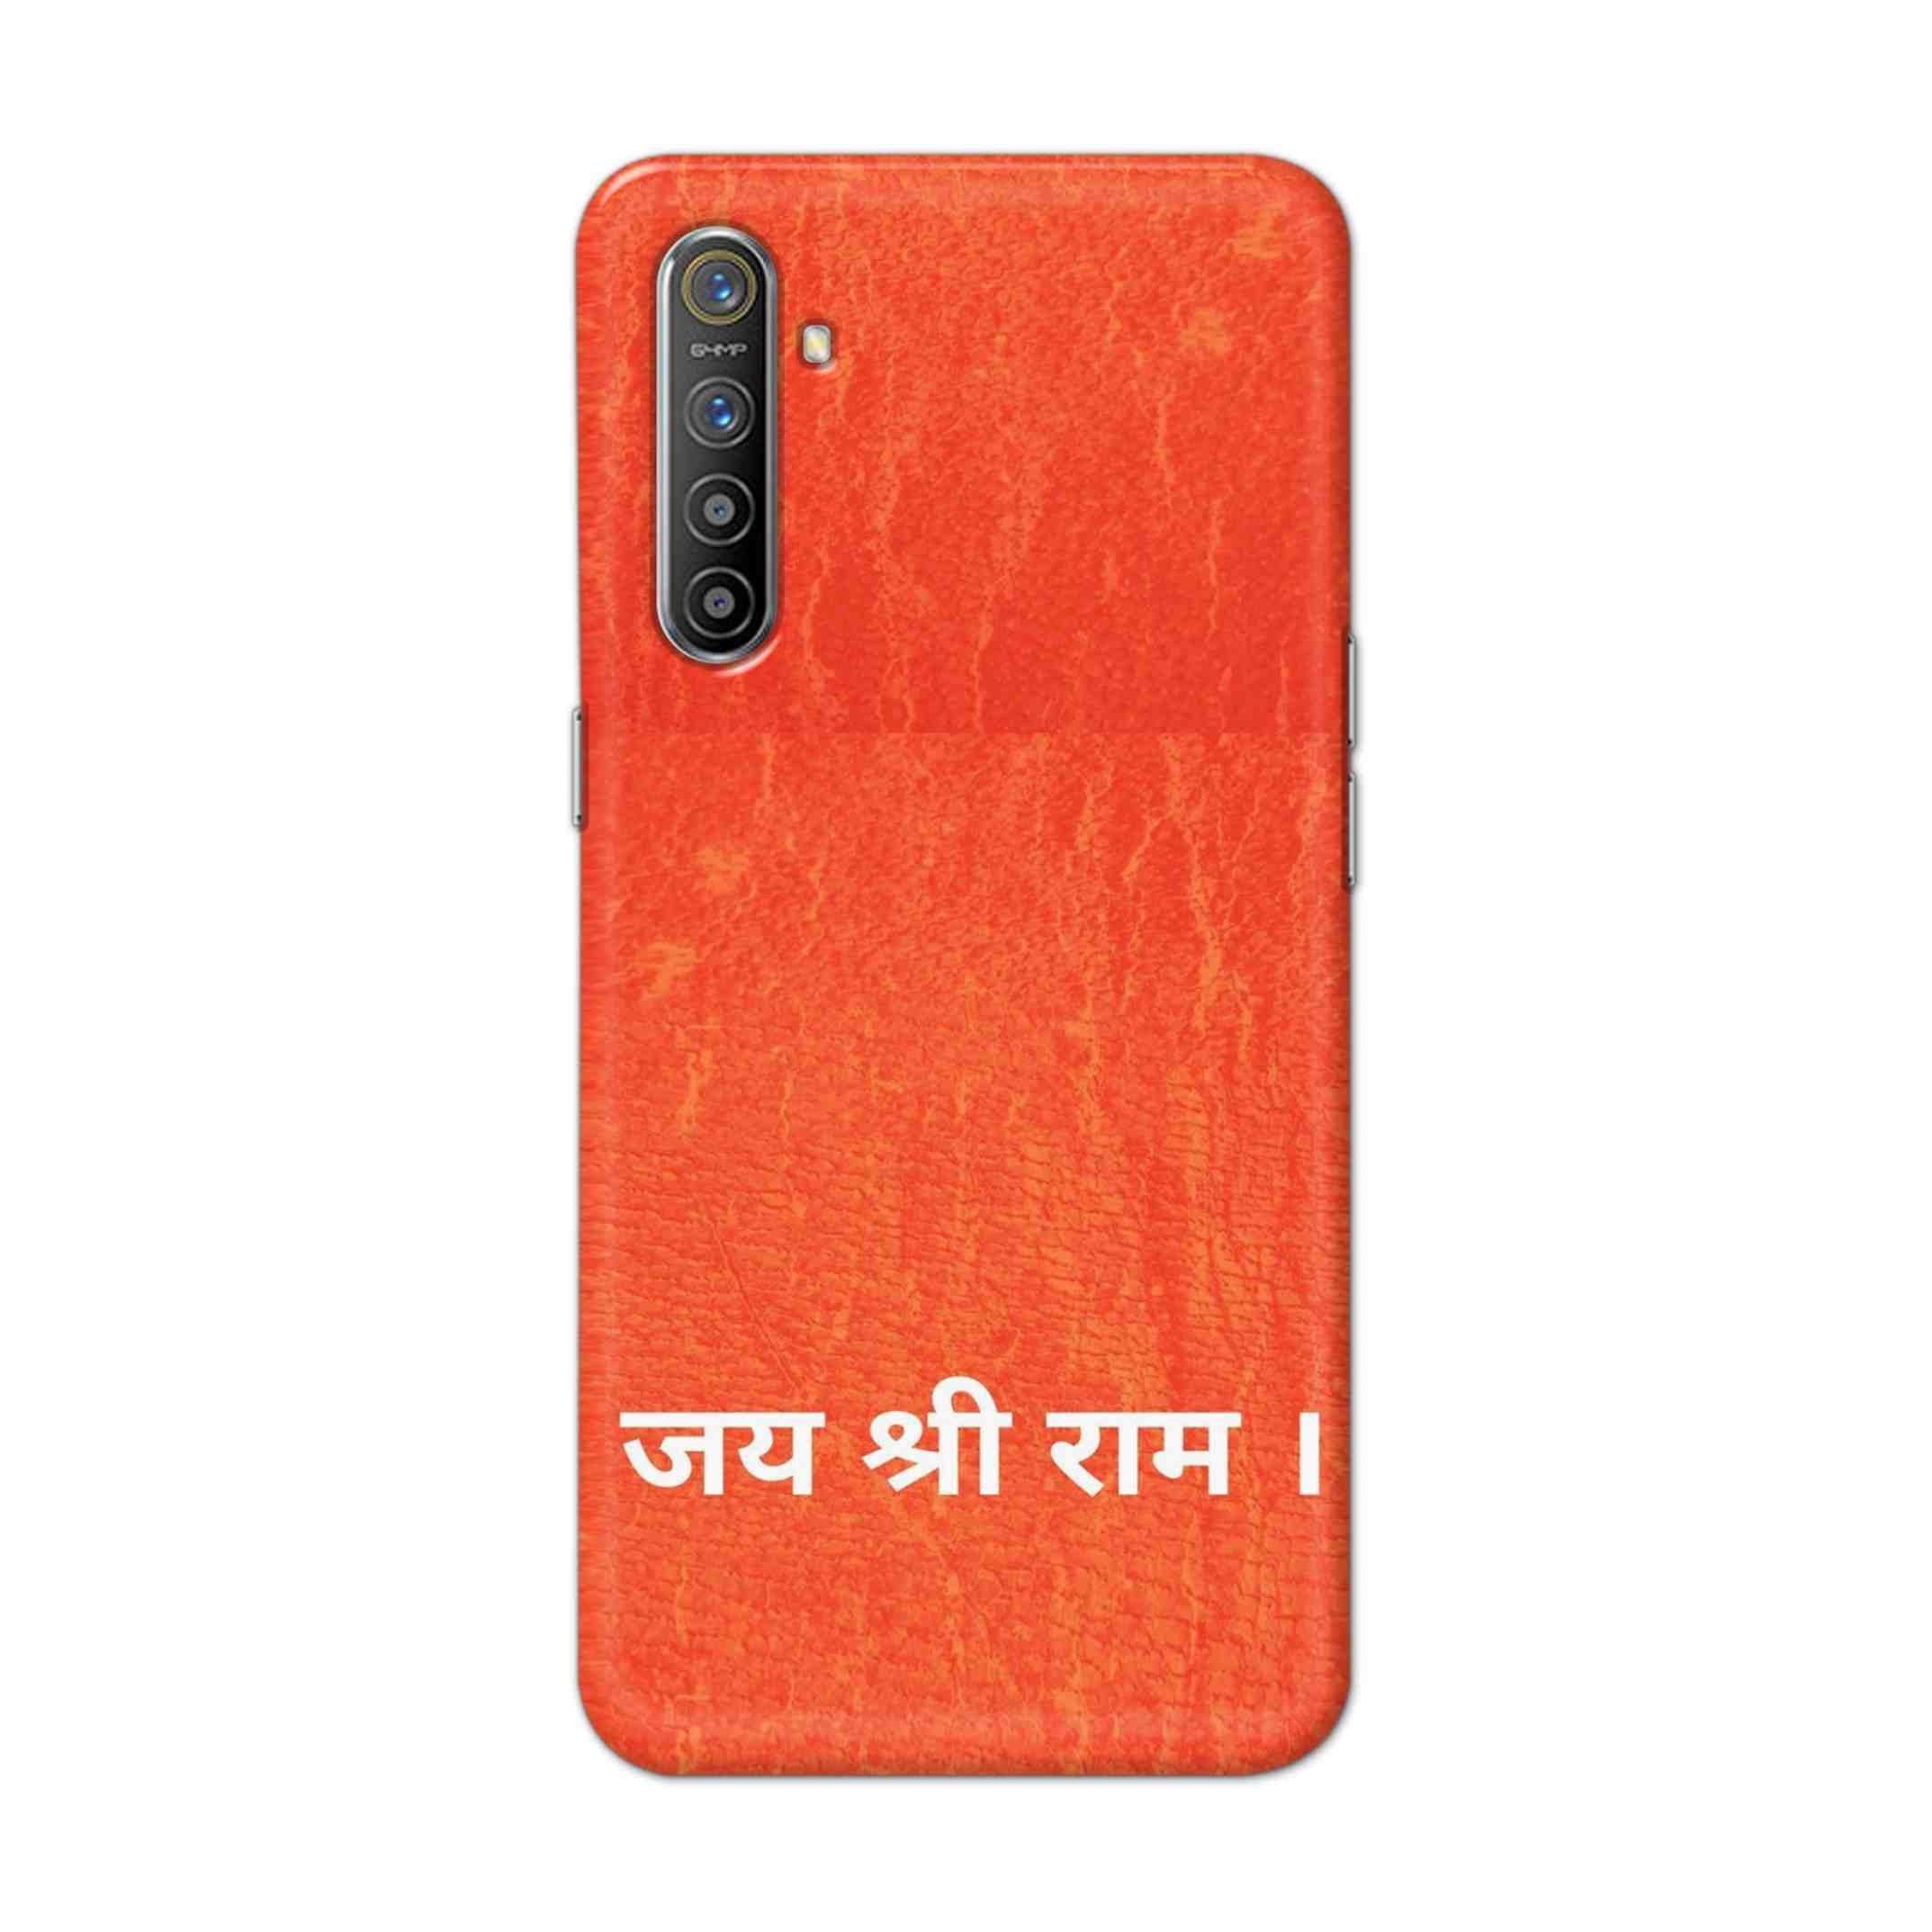 Buy Jai Shree Ram Hard Back Mobile Phone Case Cover For Oppo Realme XT Online